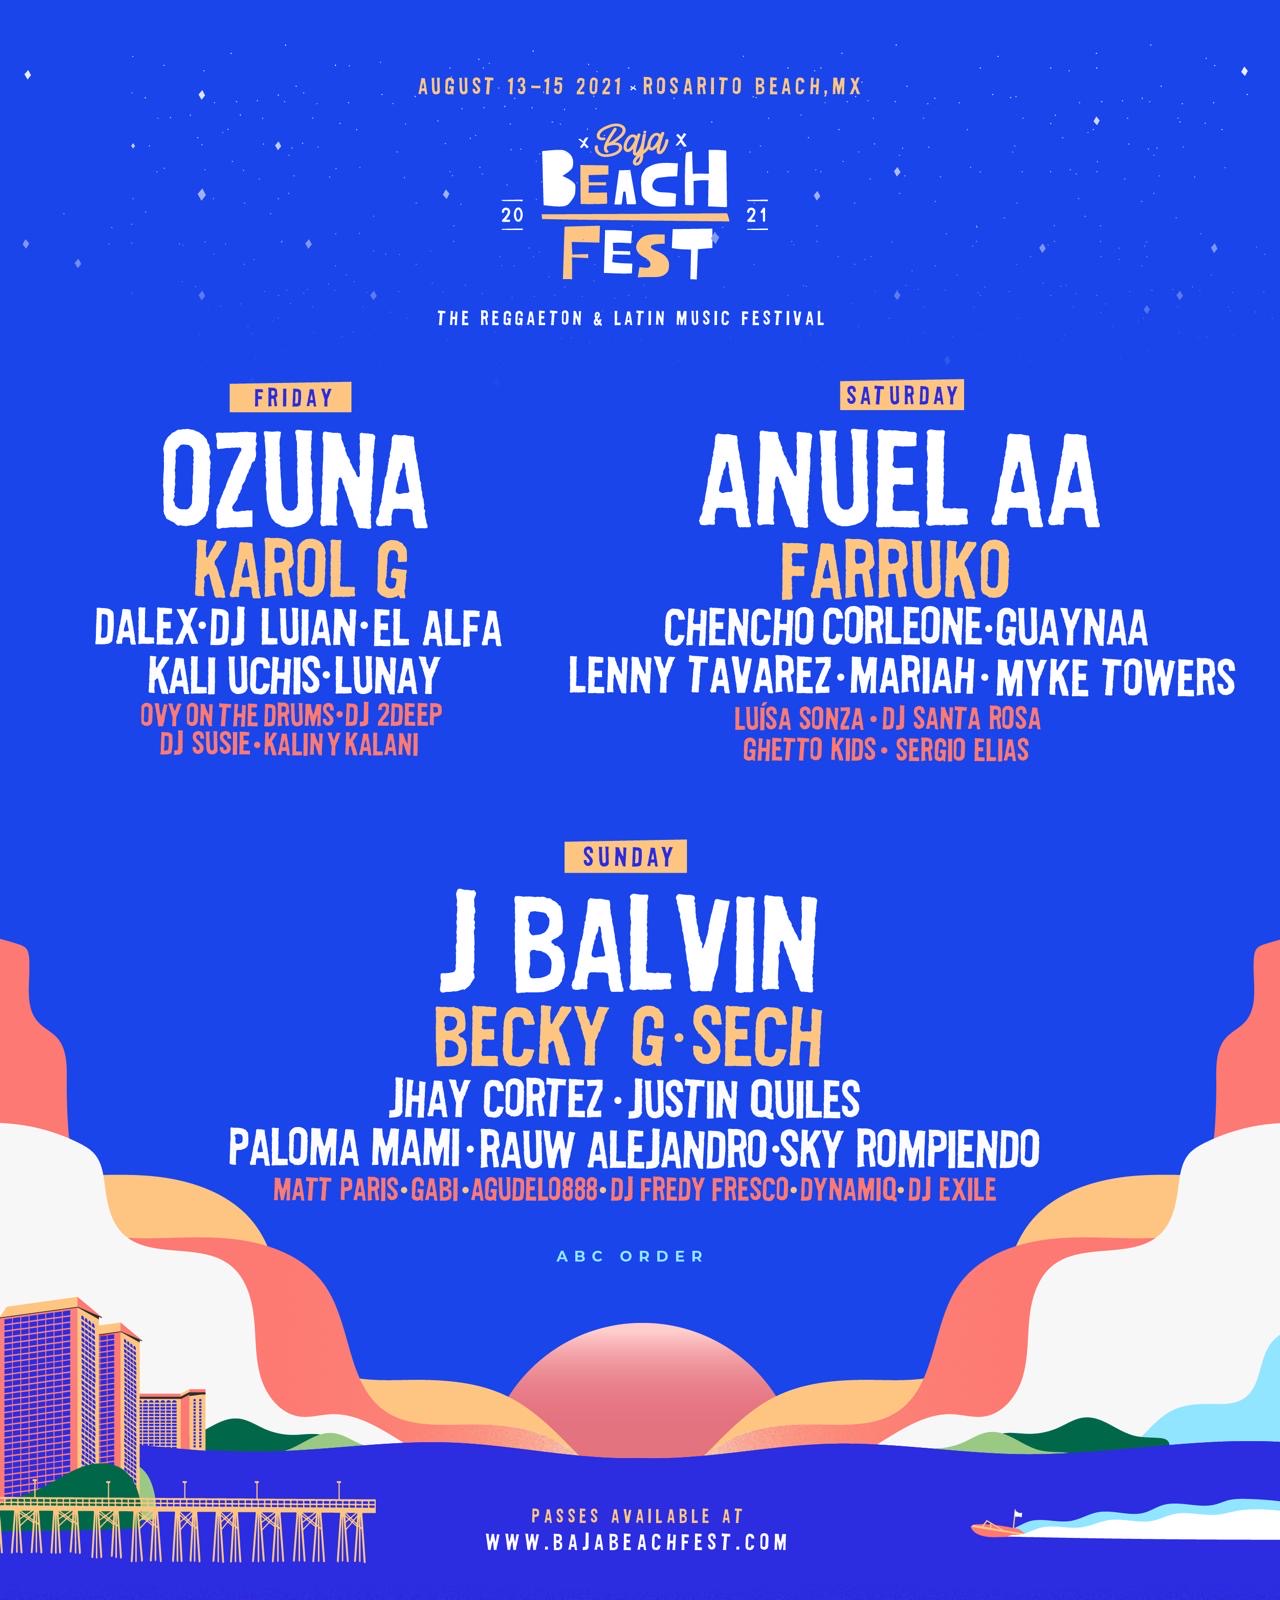 Baja Beach Fest 2021 Announces Anuel AA, J Balvin, Ozuna as